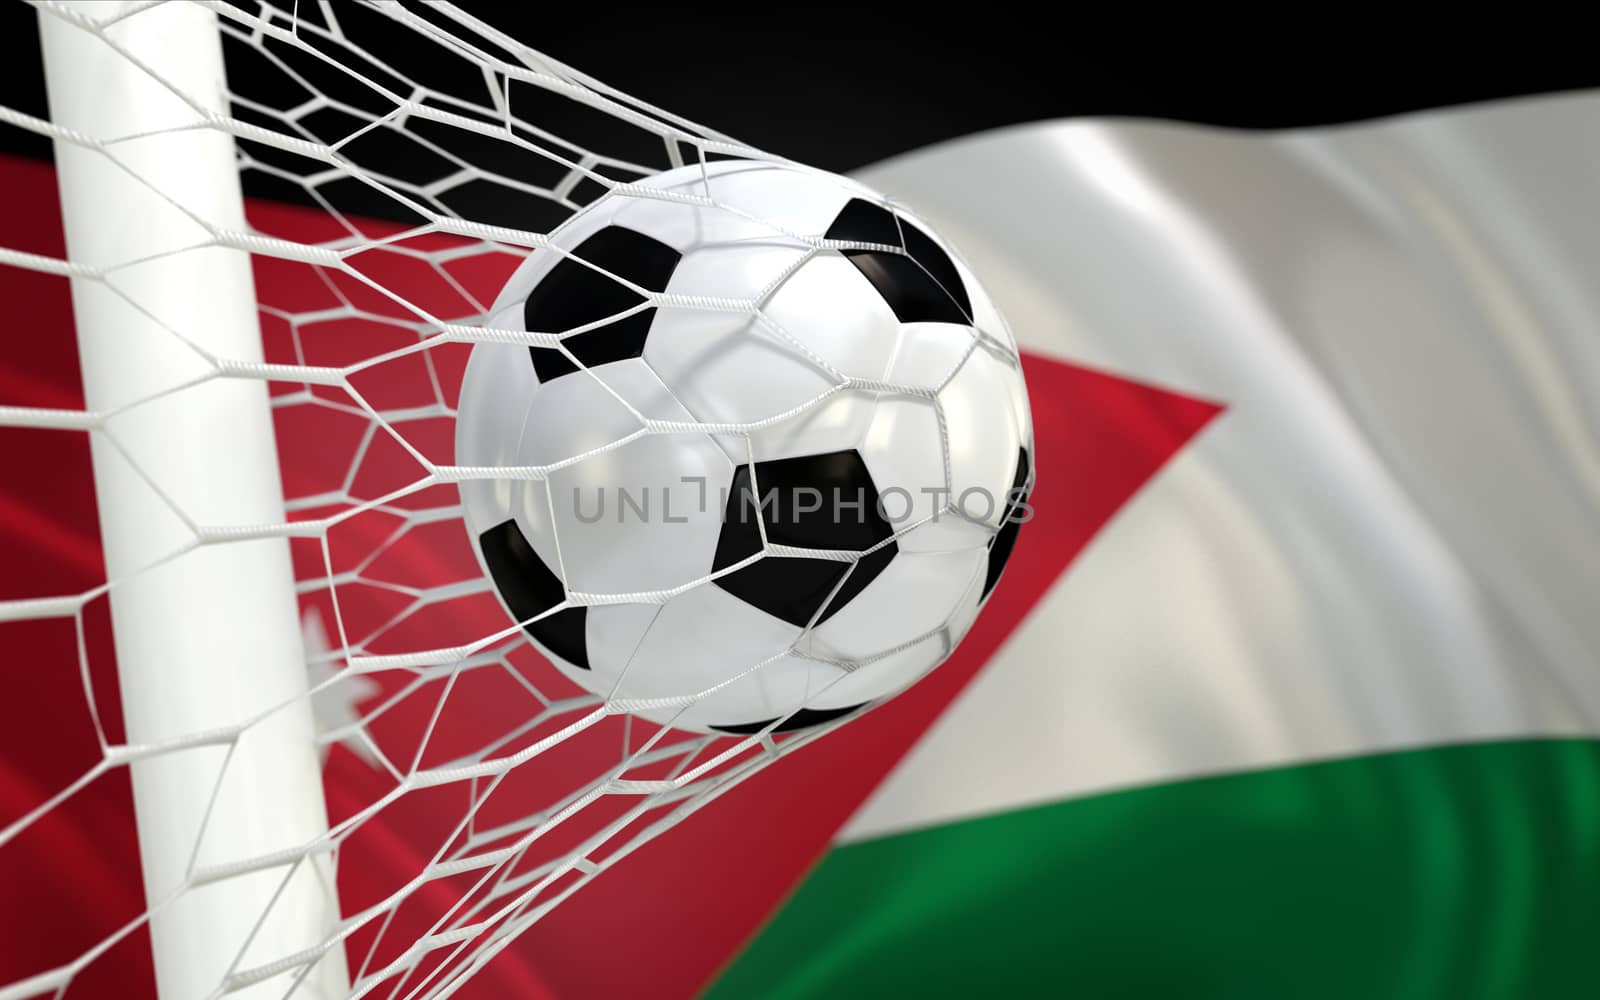 Jordan waving flag and soccer ball in goal net by Barbraford